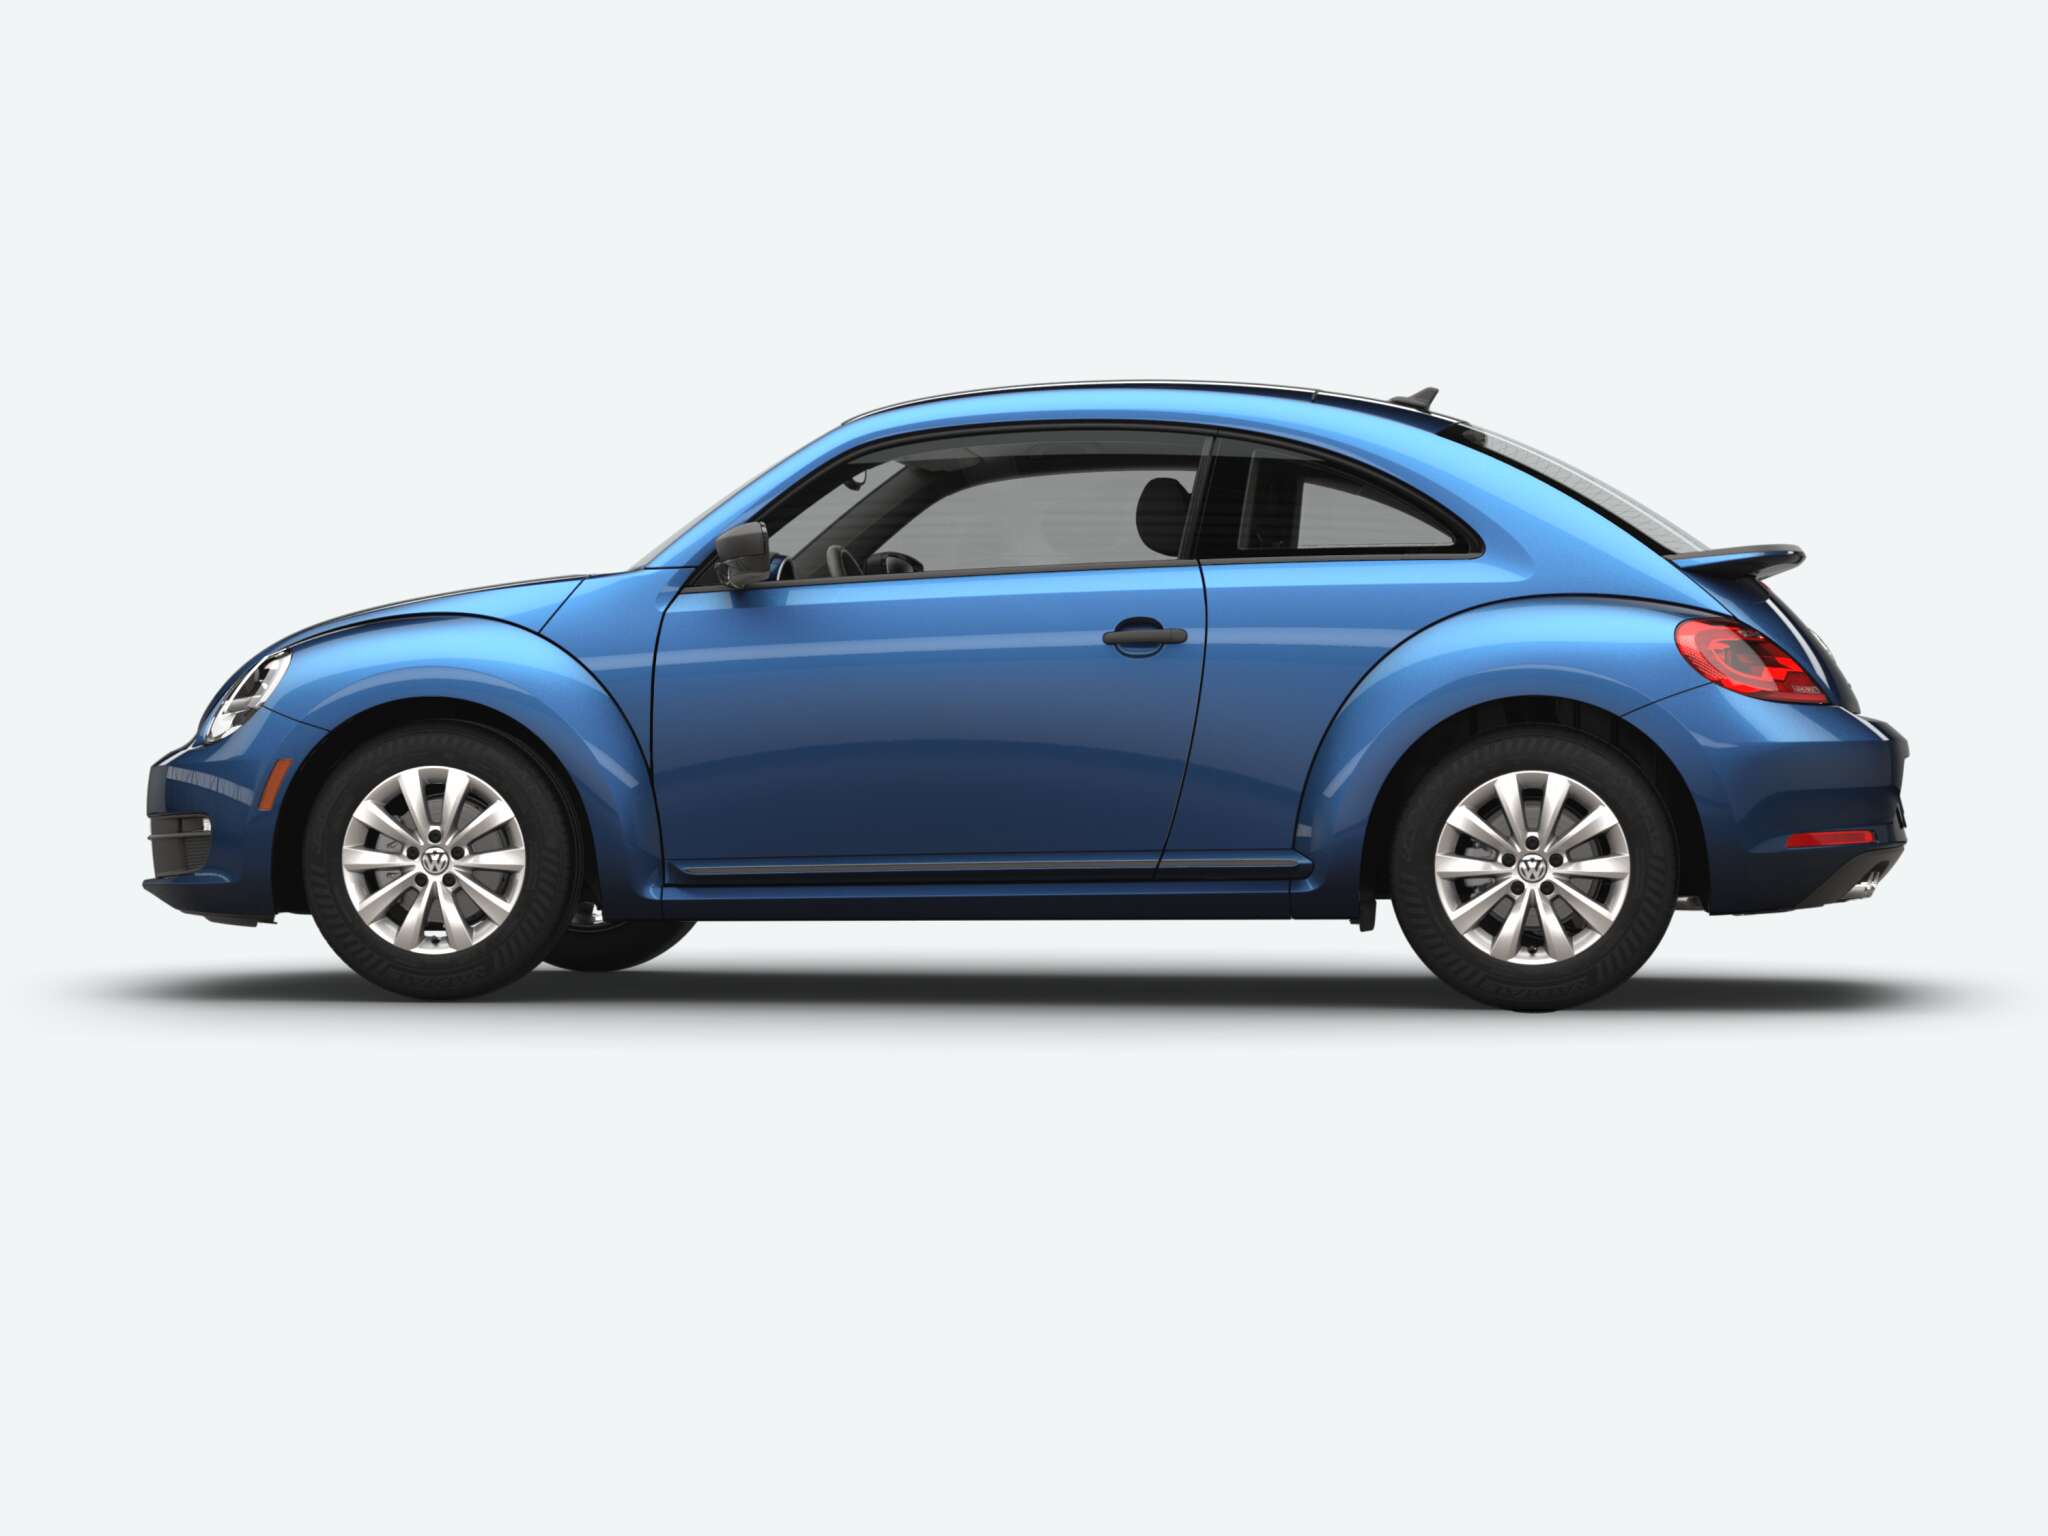 Volkswagen Beetle S side view